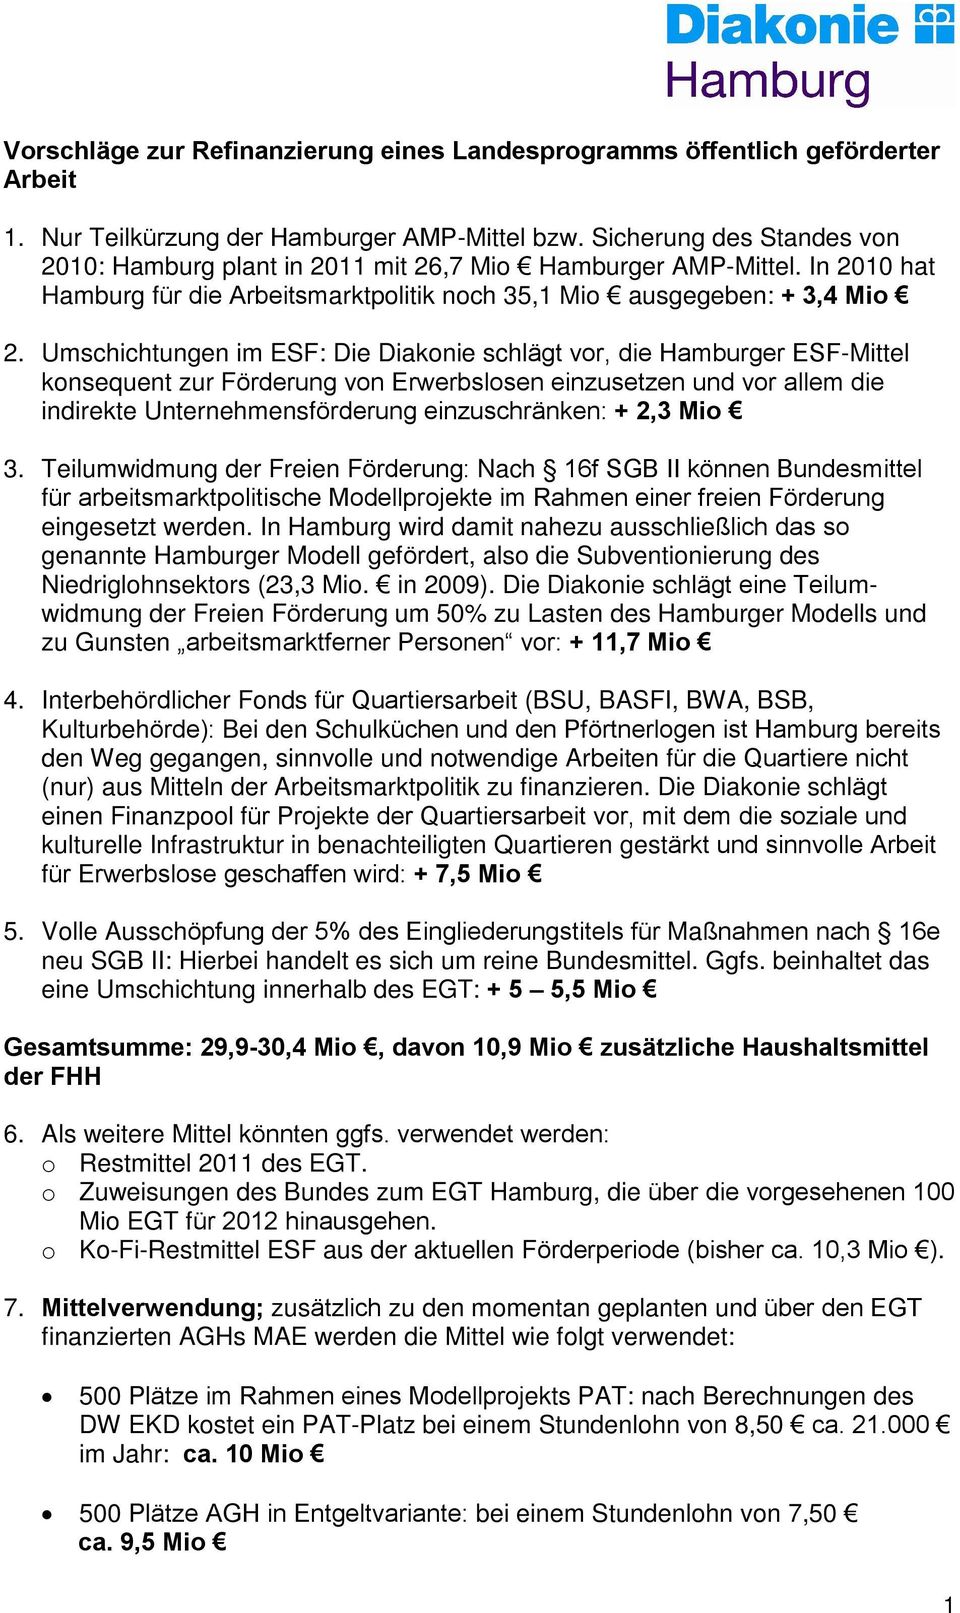 Umschichtungen im ESF: Die Diakonie schlägt vor, die Hamburger ESF-Mittel konsequent zur Förderung von Erwerbslosen einzusetzen und vor allem die indirekte Unternehmensförderung einzuschränken: + 2,3